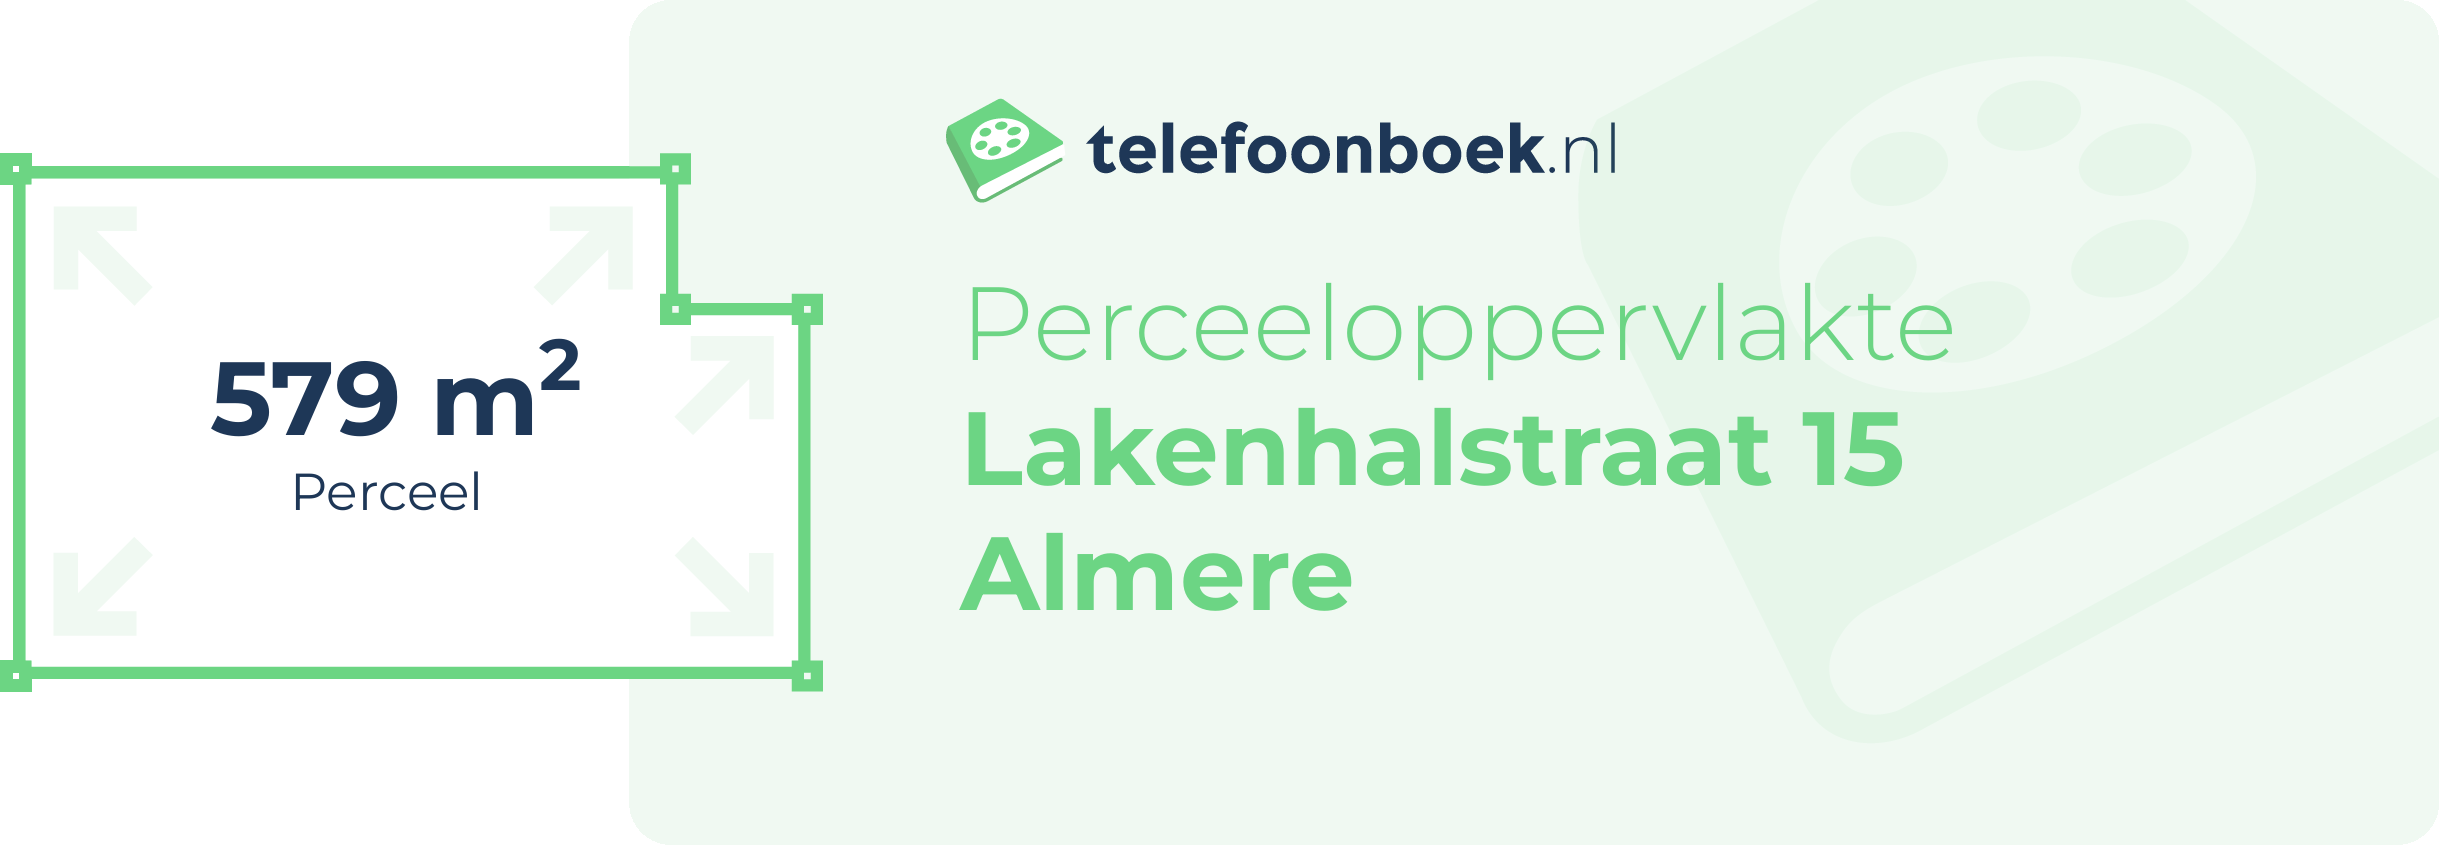 Perceeloppervlakte Lakenhalstraat 15 Almere